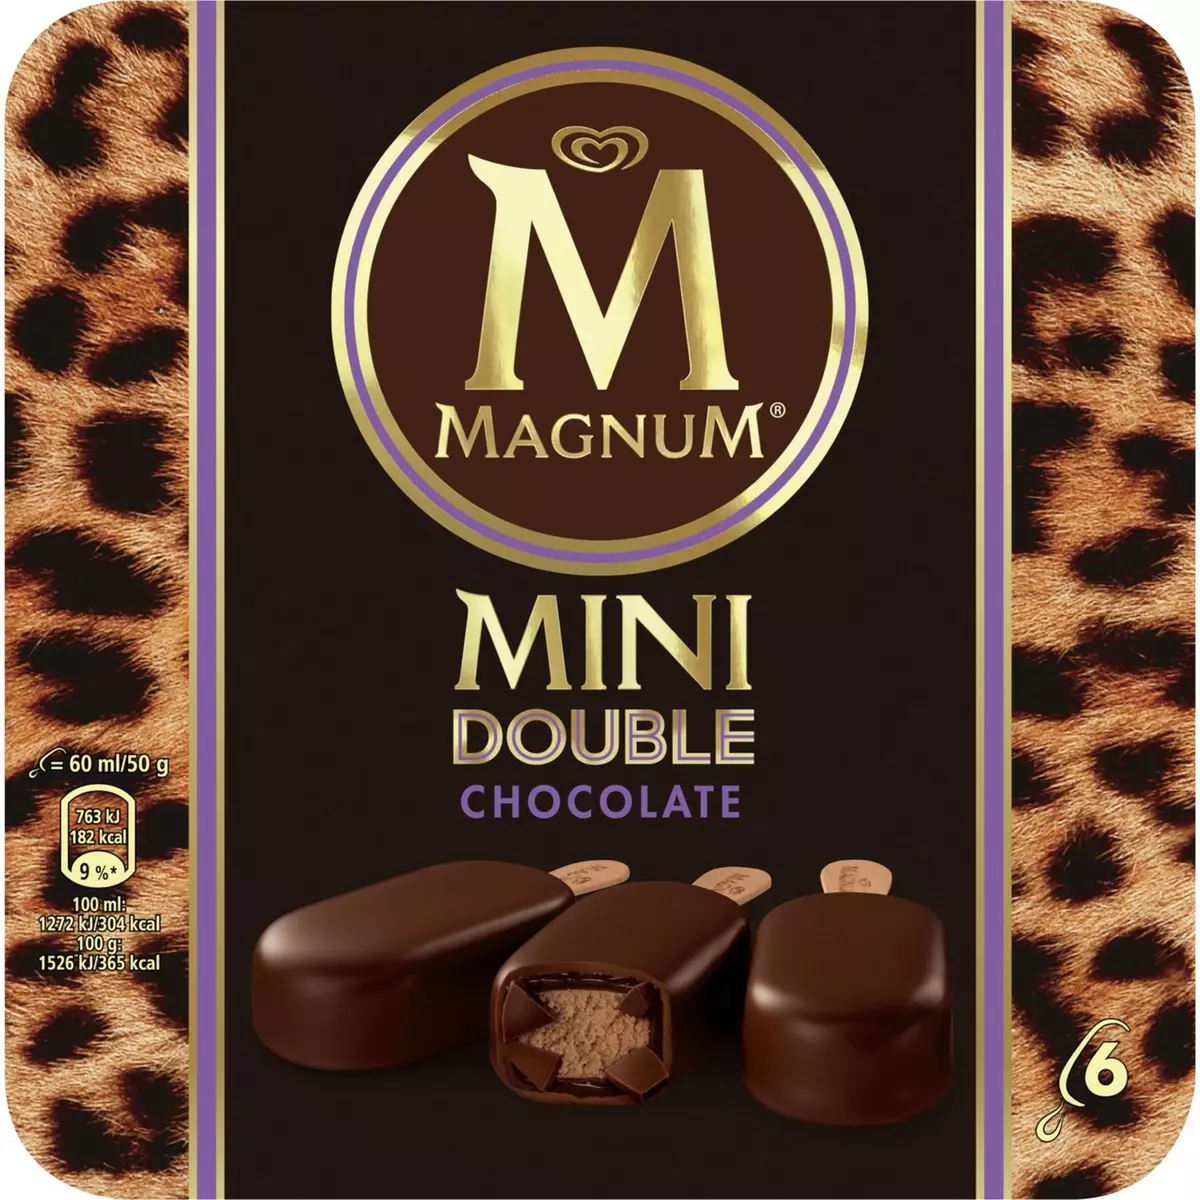 MAGNUM Mini bâtonnet glacé double chocolat 6 pièces 300g